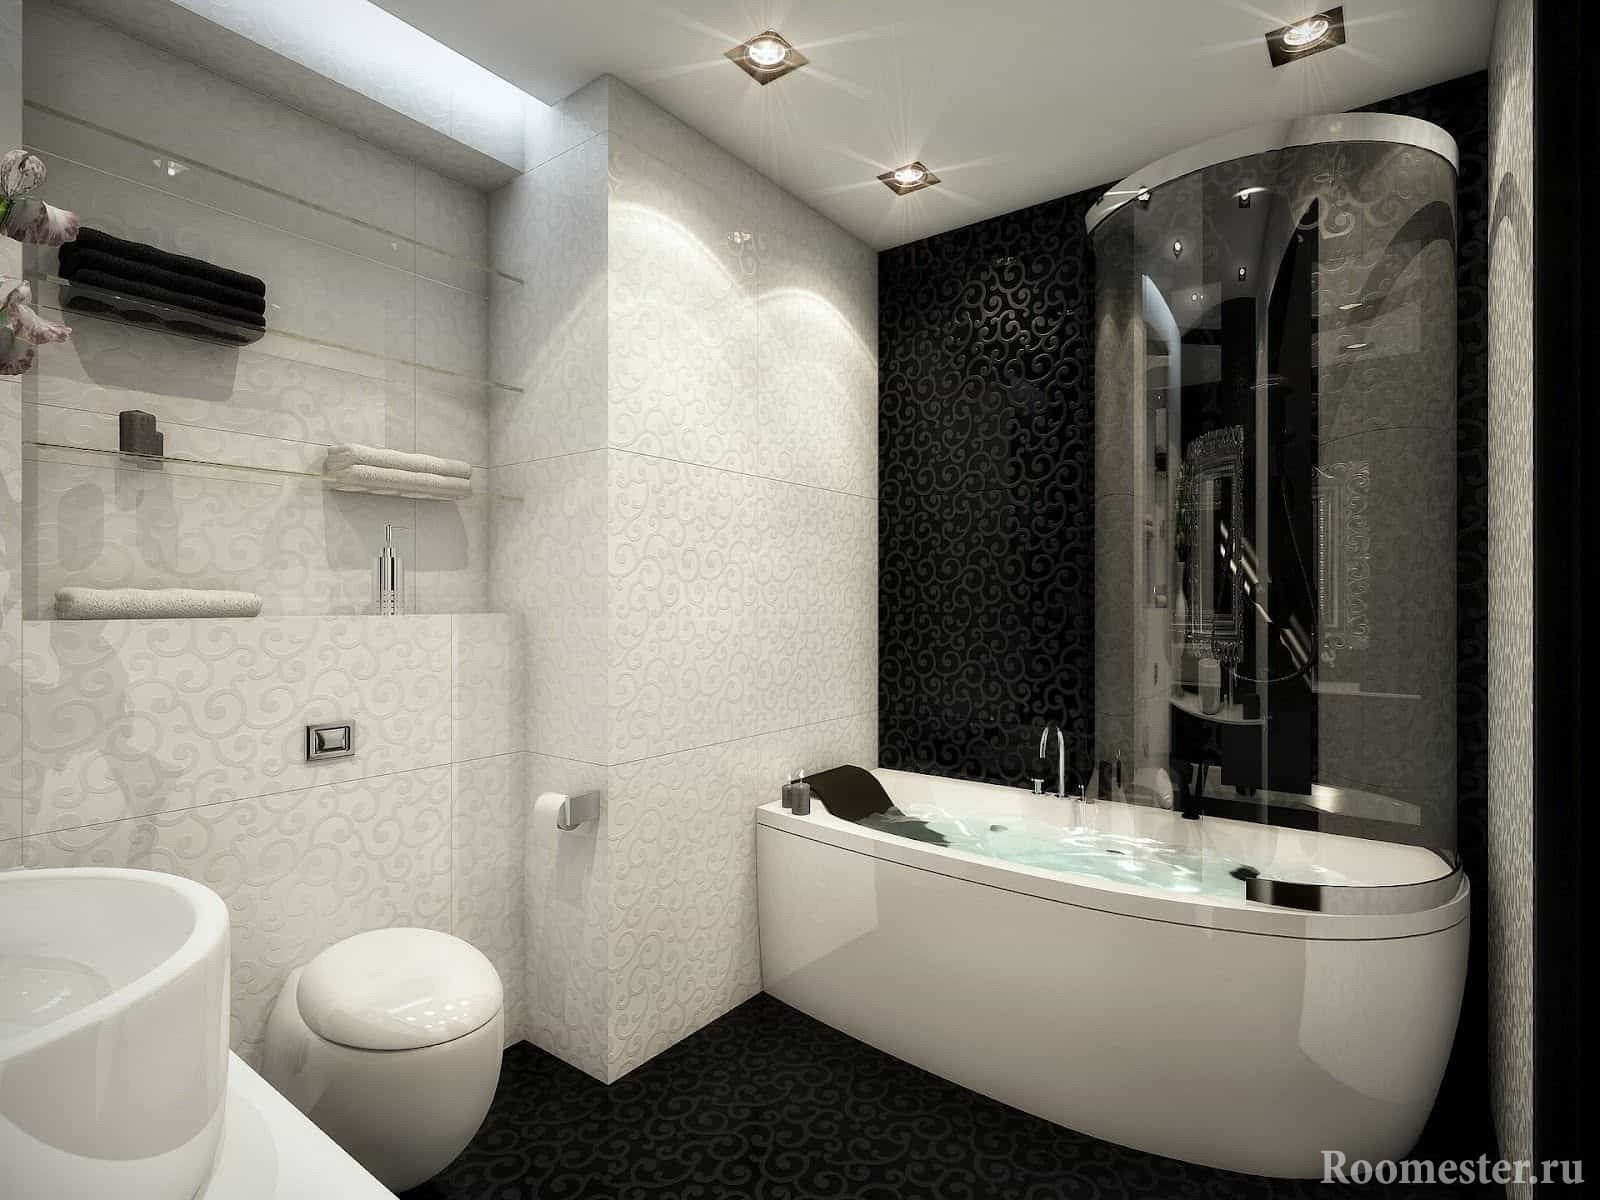 Ванная комната дизайн фото 4. Ванная комната. Дизайнерская ванная комната. Ванная в черно белых тонах. Дизайн интерьера ванный комнаты.